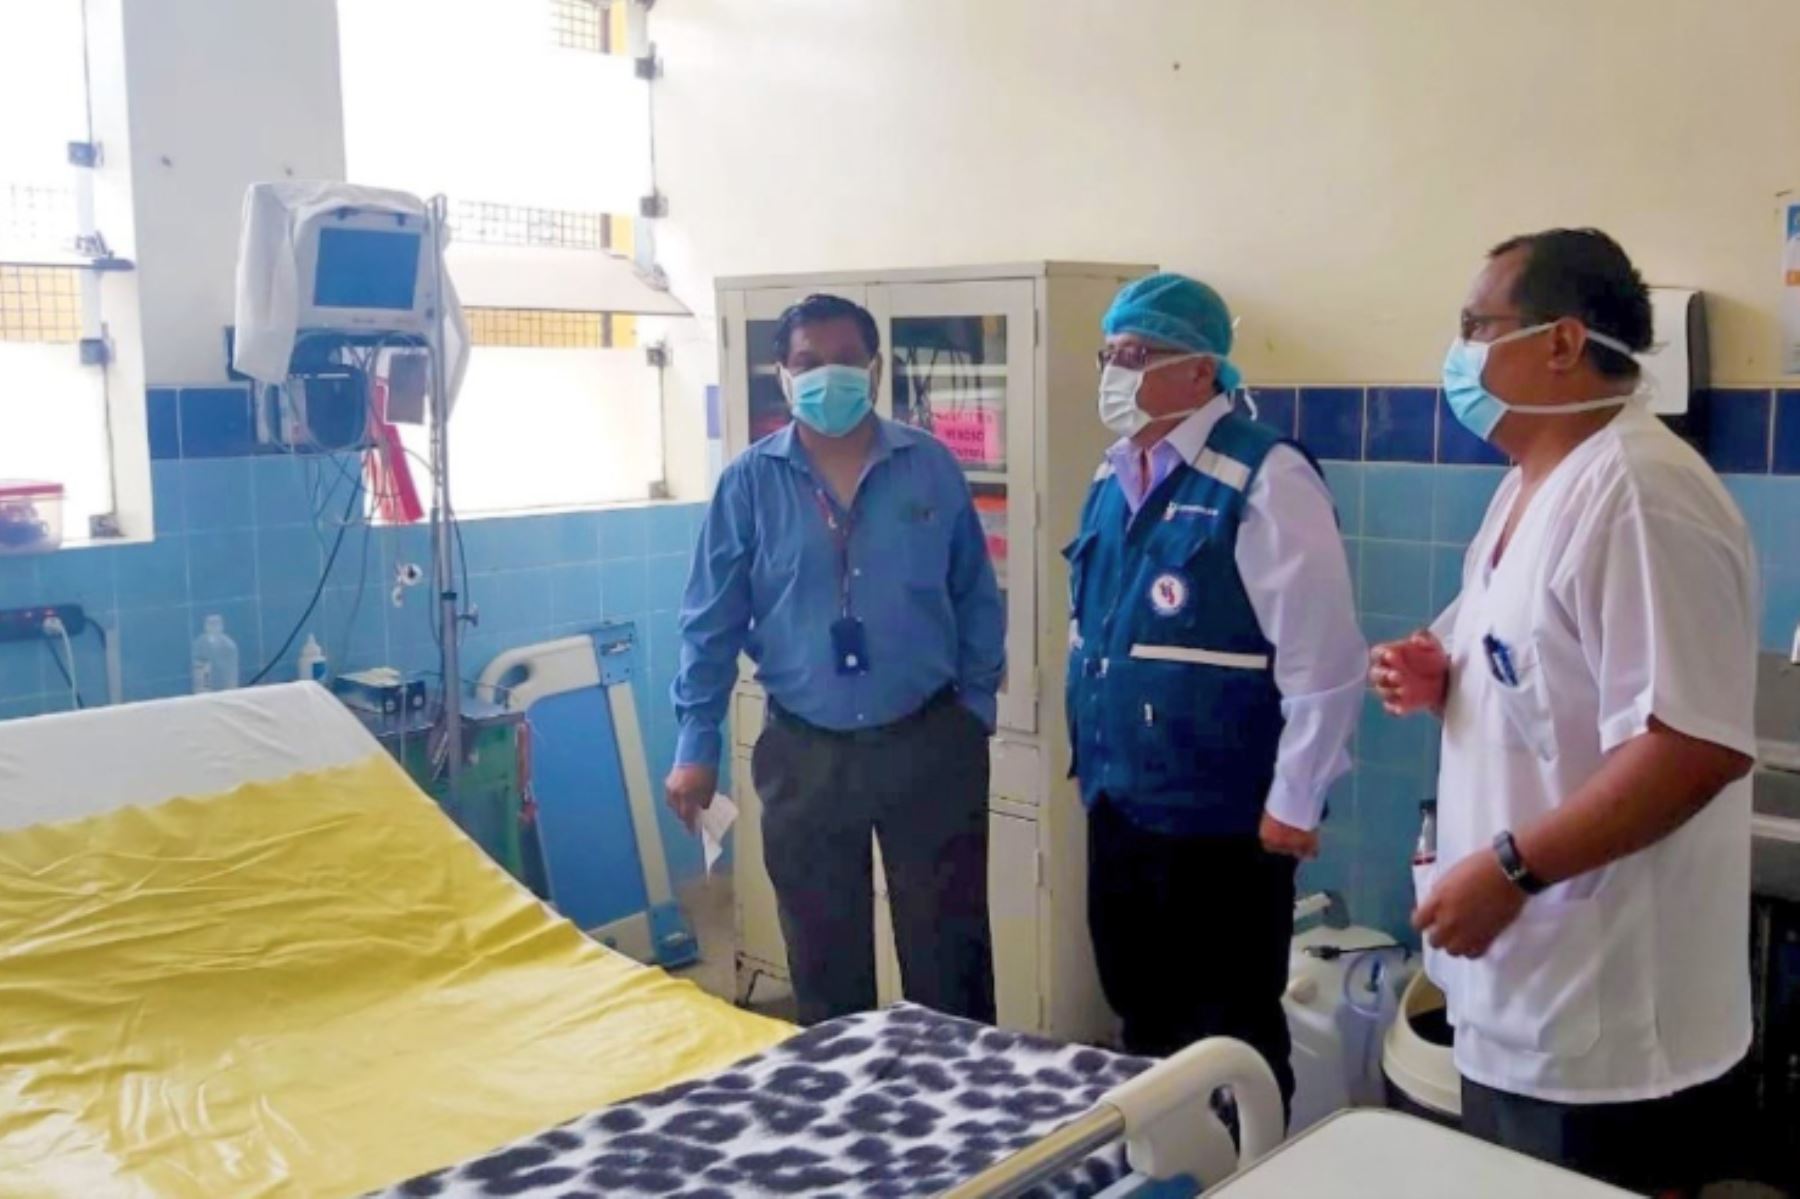 El Ejecutivo transfirió una partida presupuestal superior a los 3 millones de soles destinada a los hospitales de la región Lima, a fin de fortalecer la prevención y detener la propagación del coronavirus Covid-19.